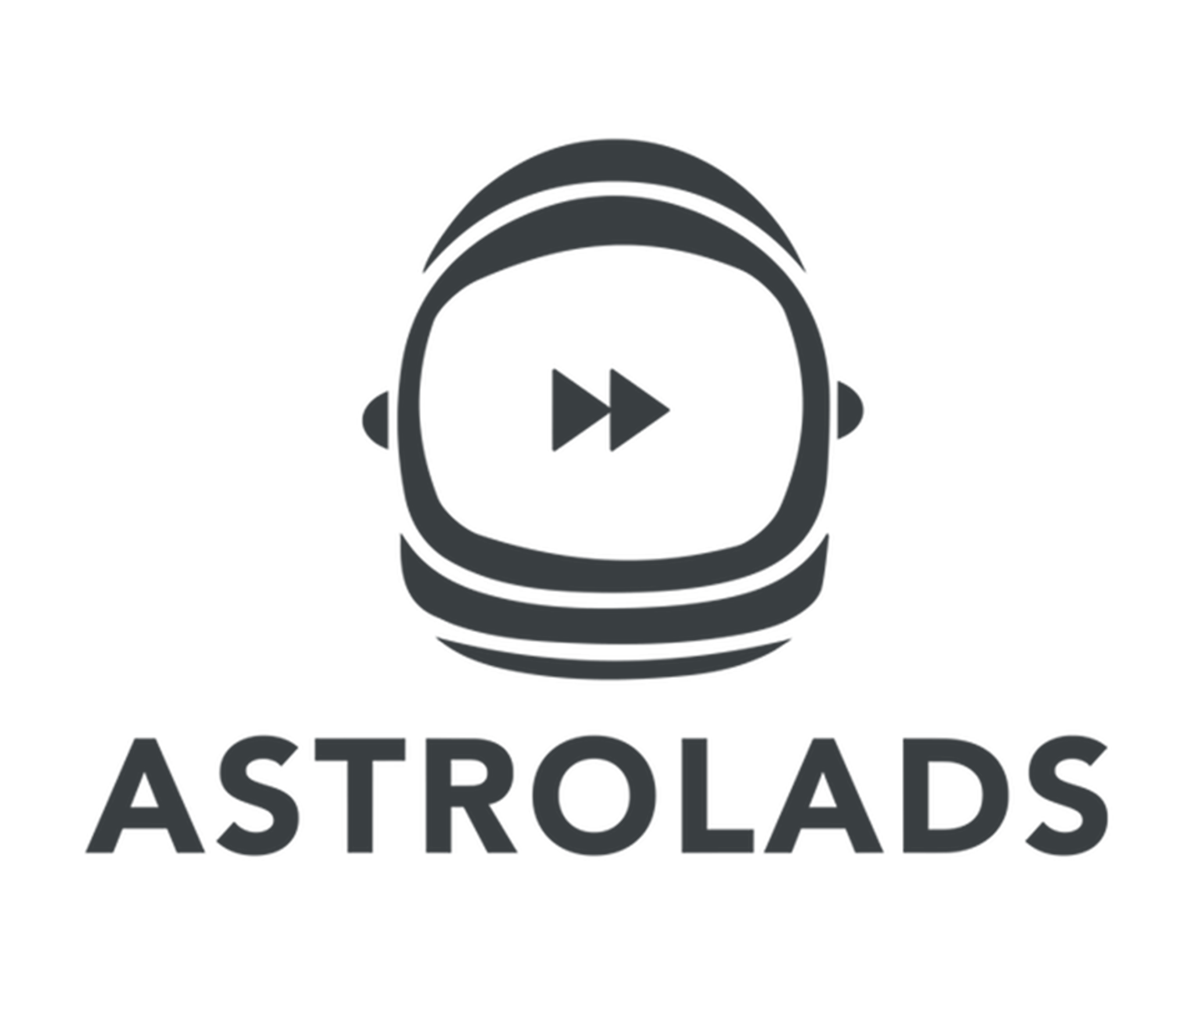 ASTROLADS_LOGO_DARK